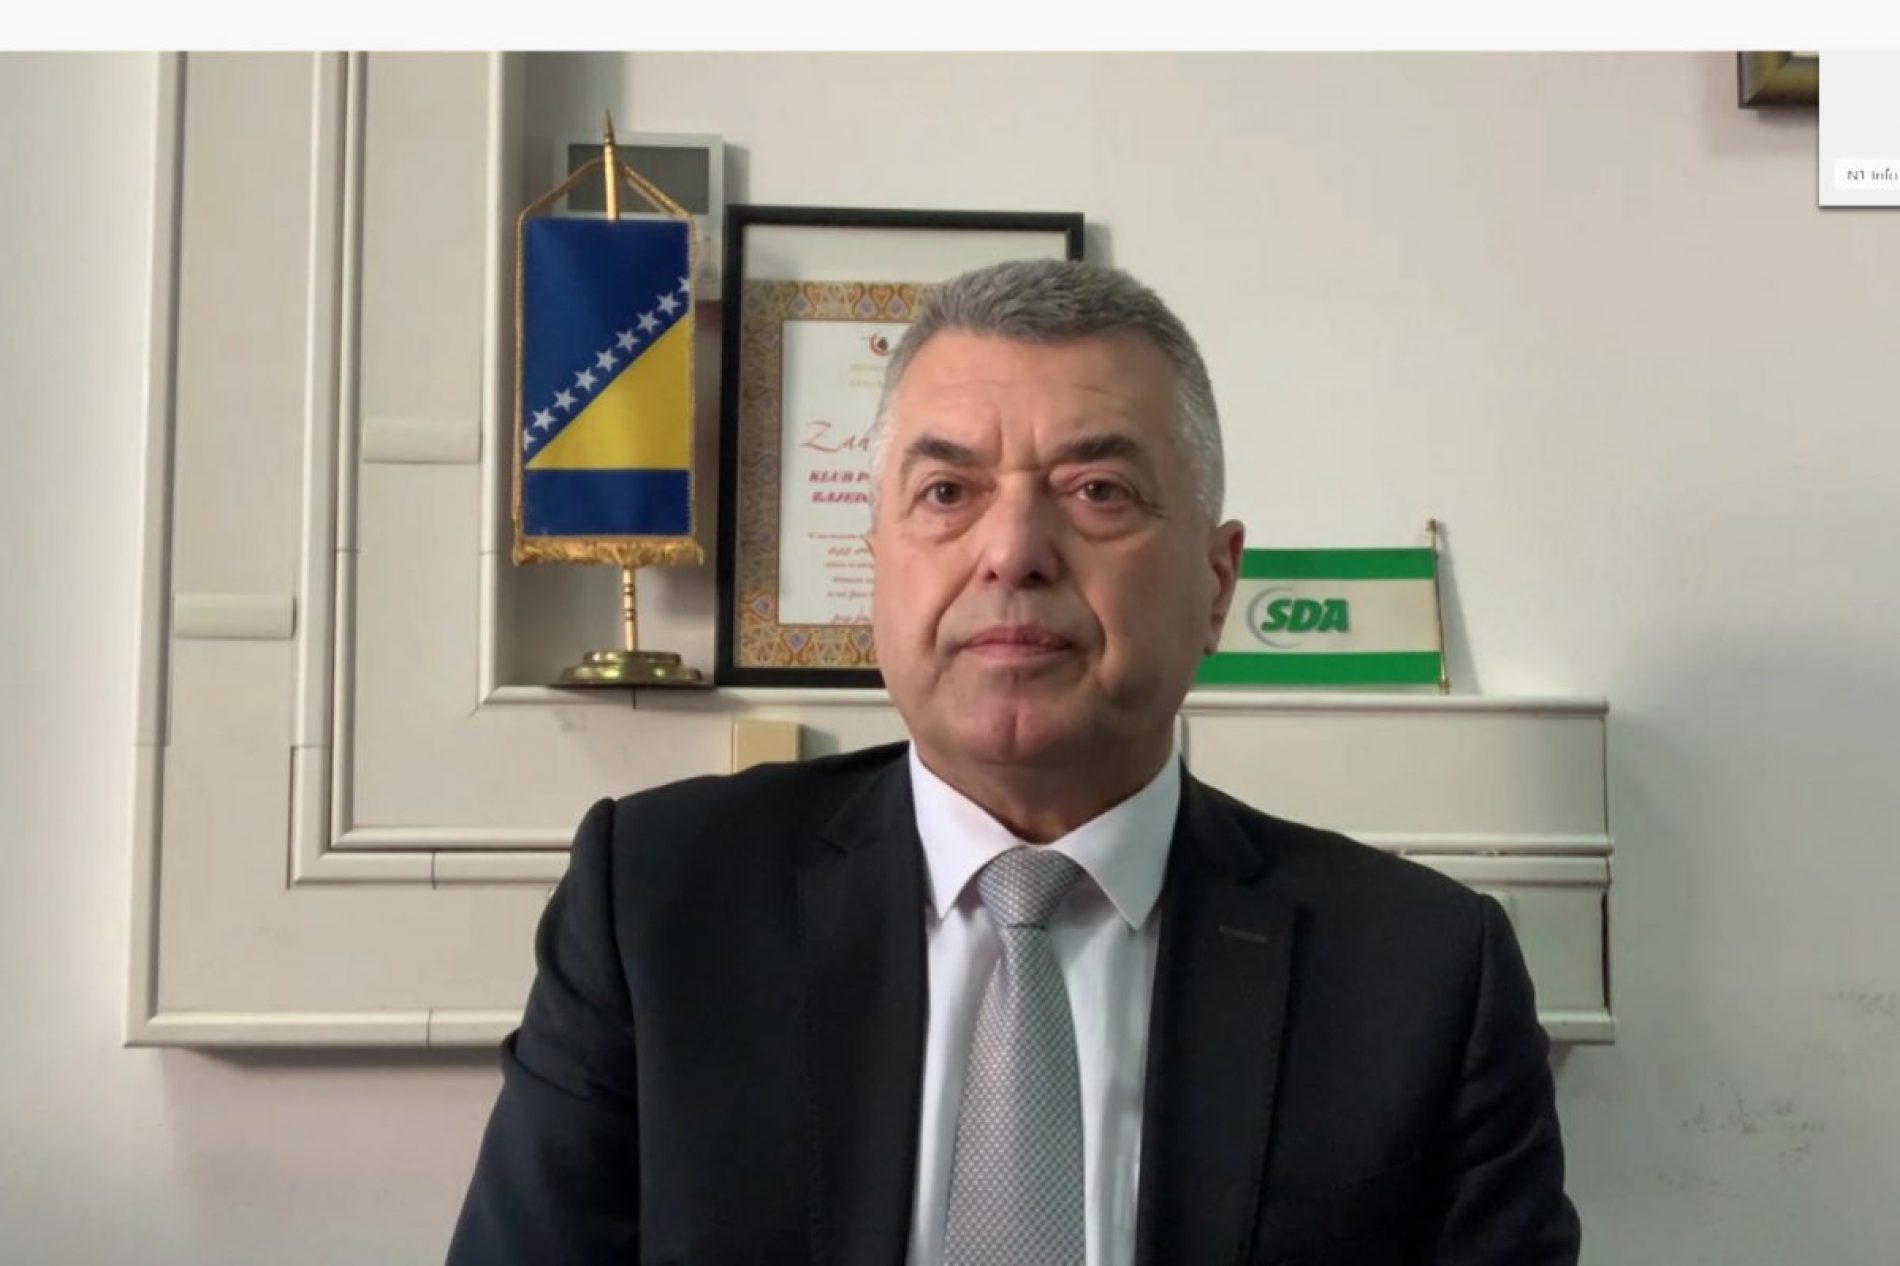 Bratić Kalabuhovu: Vi ste gost u našoj državi Bosni i Hercegovini i trebate da poštujete naše gostroprimstvo